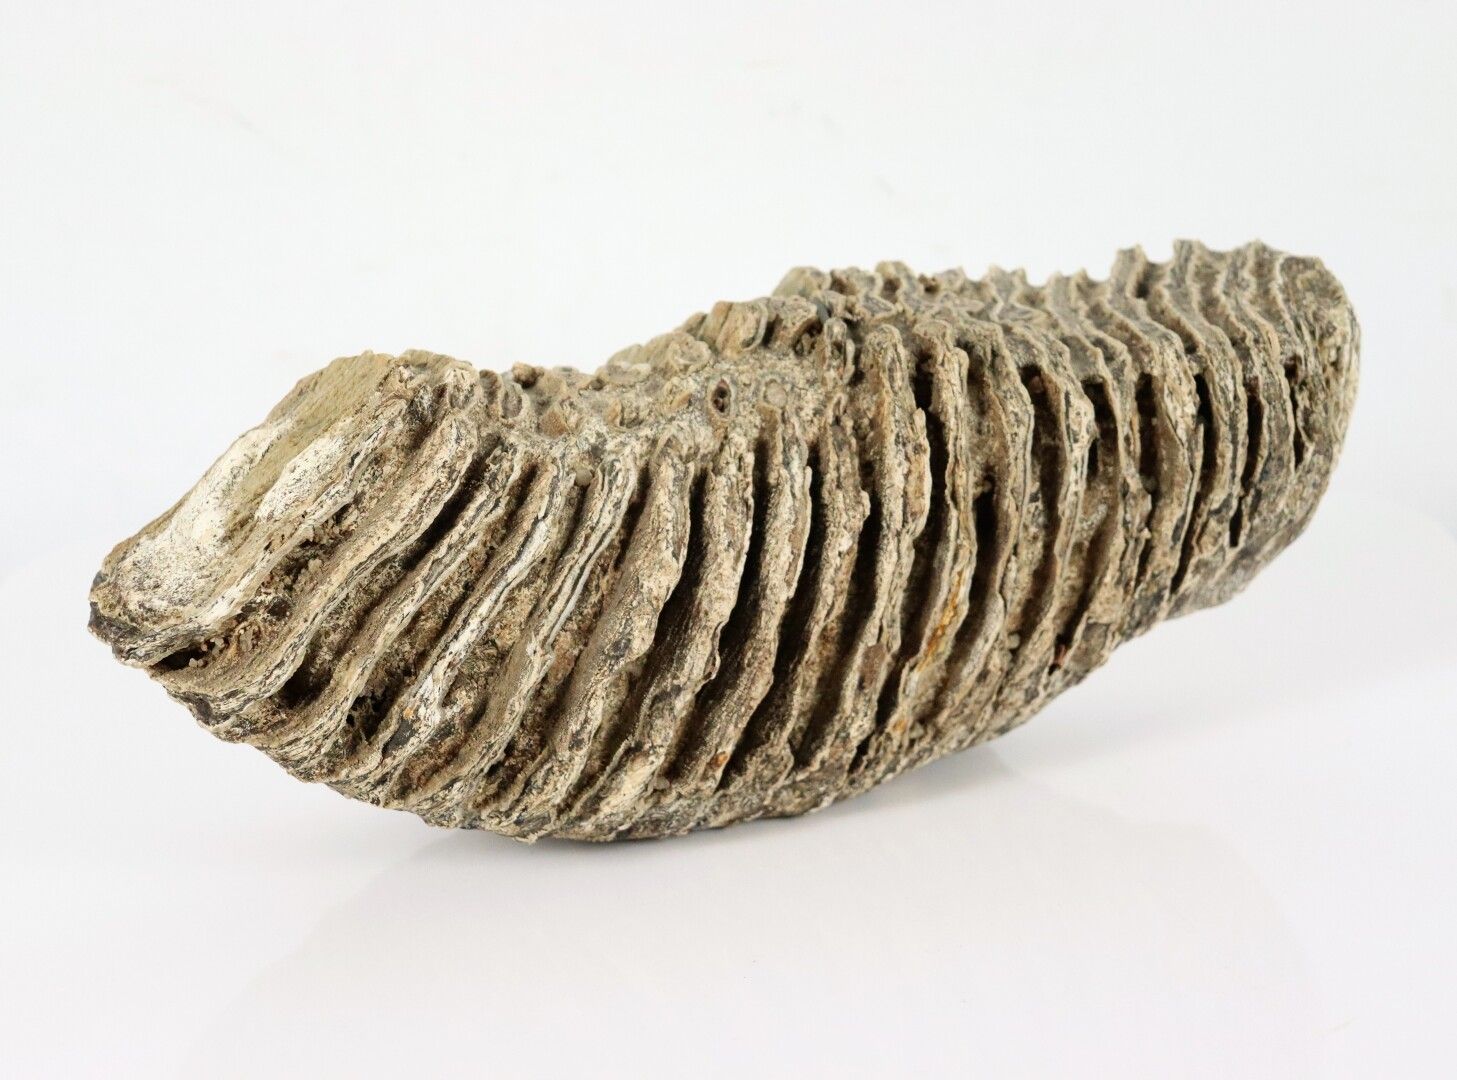 Null Molar de mamut fosilizado.

Se encuentra en el Loira.

H_12 cm L_30 cm